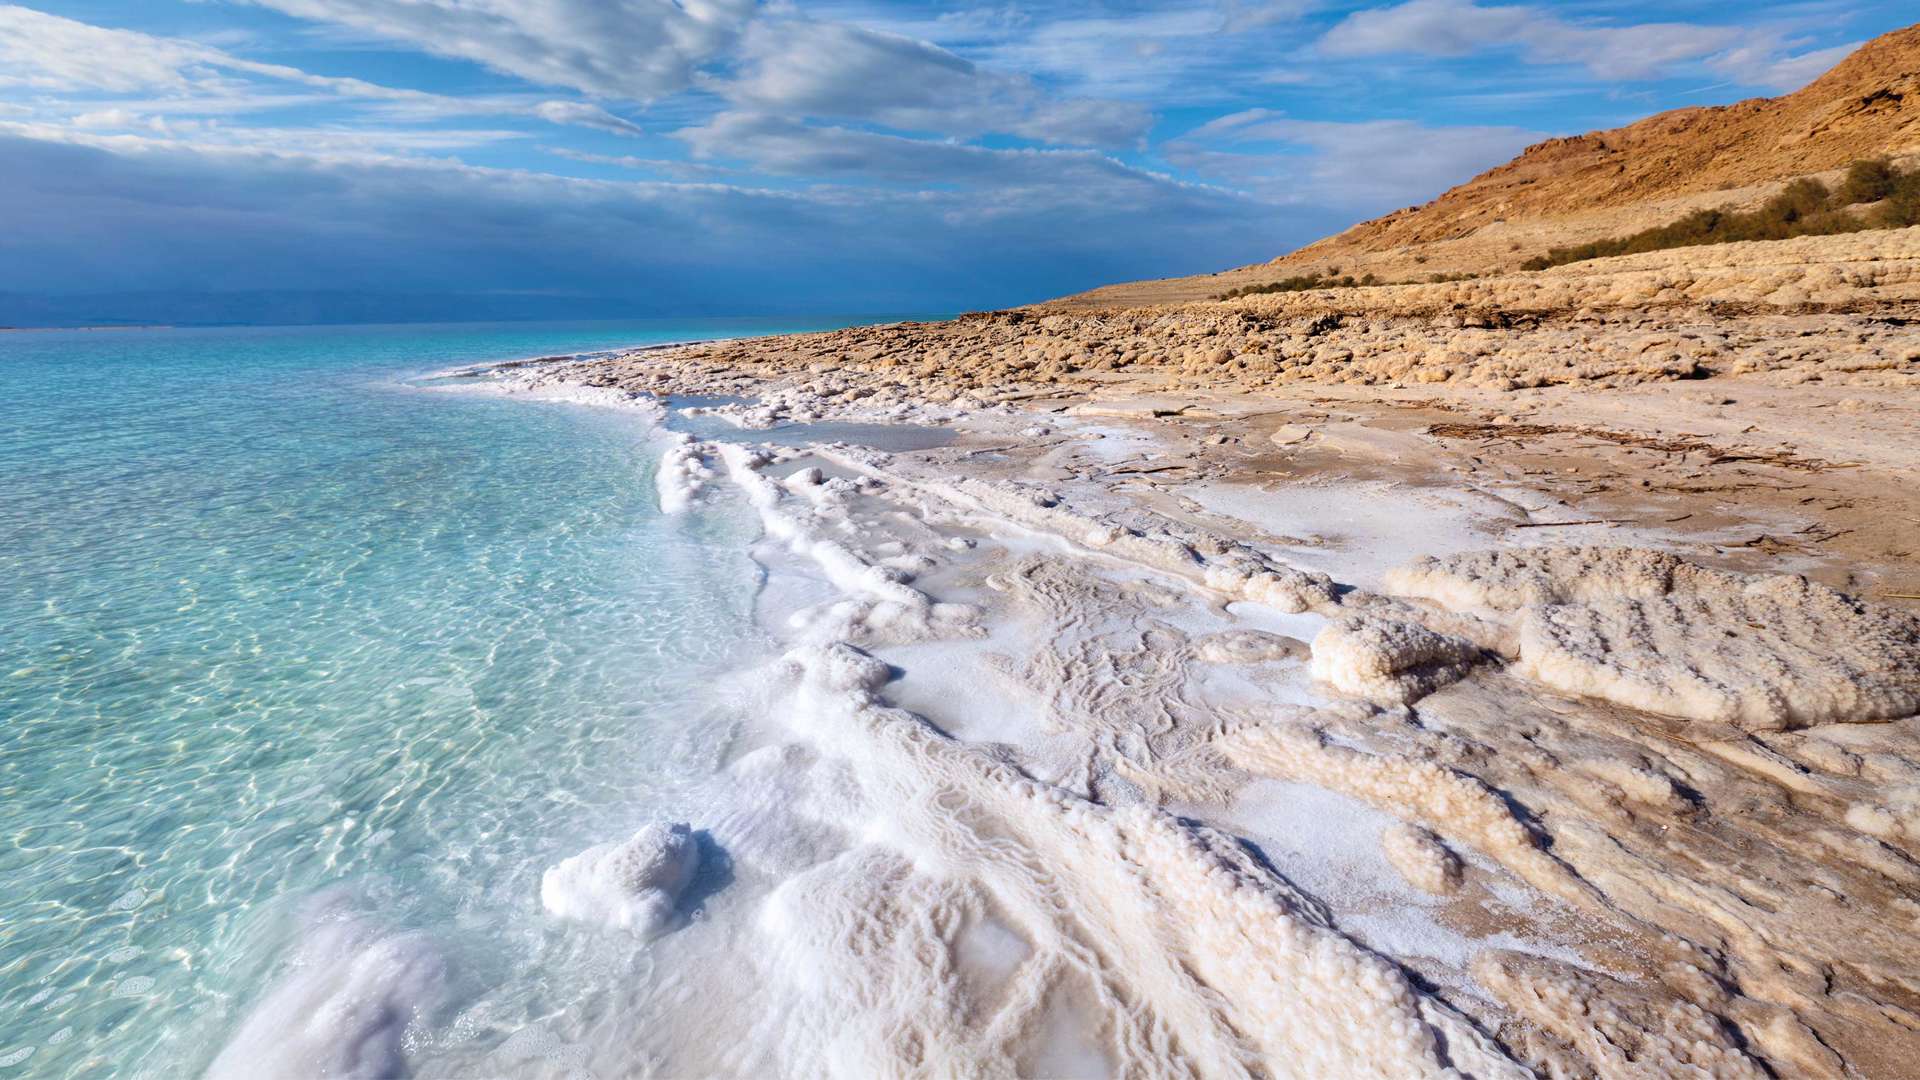 Dead Sea Coastline, Jordan